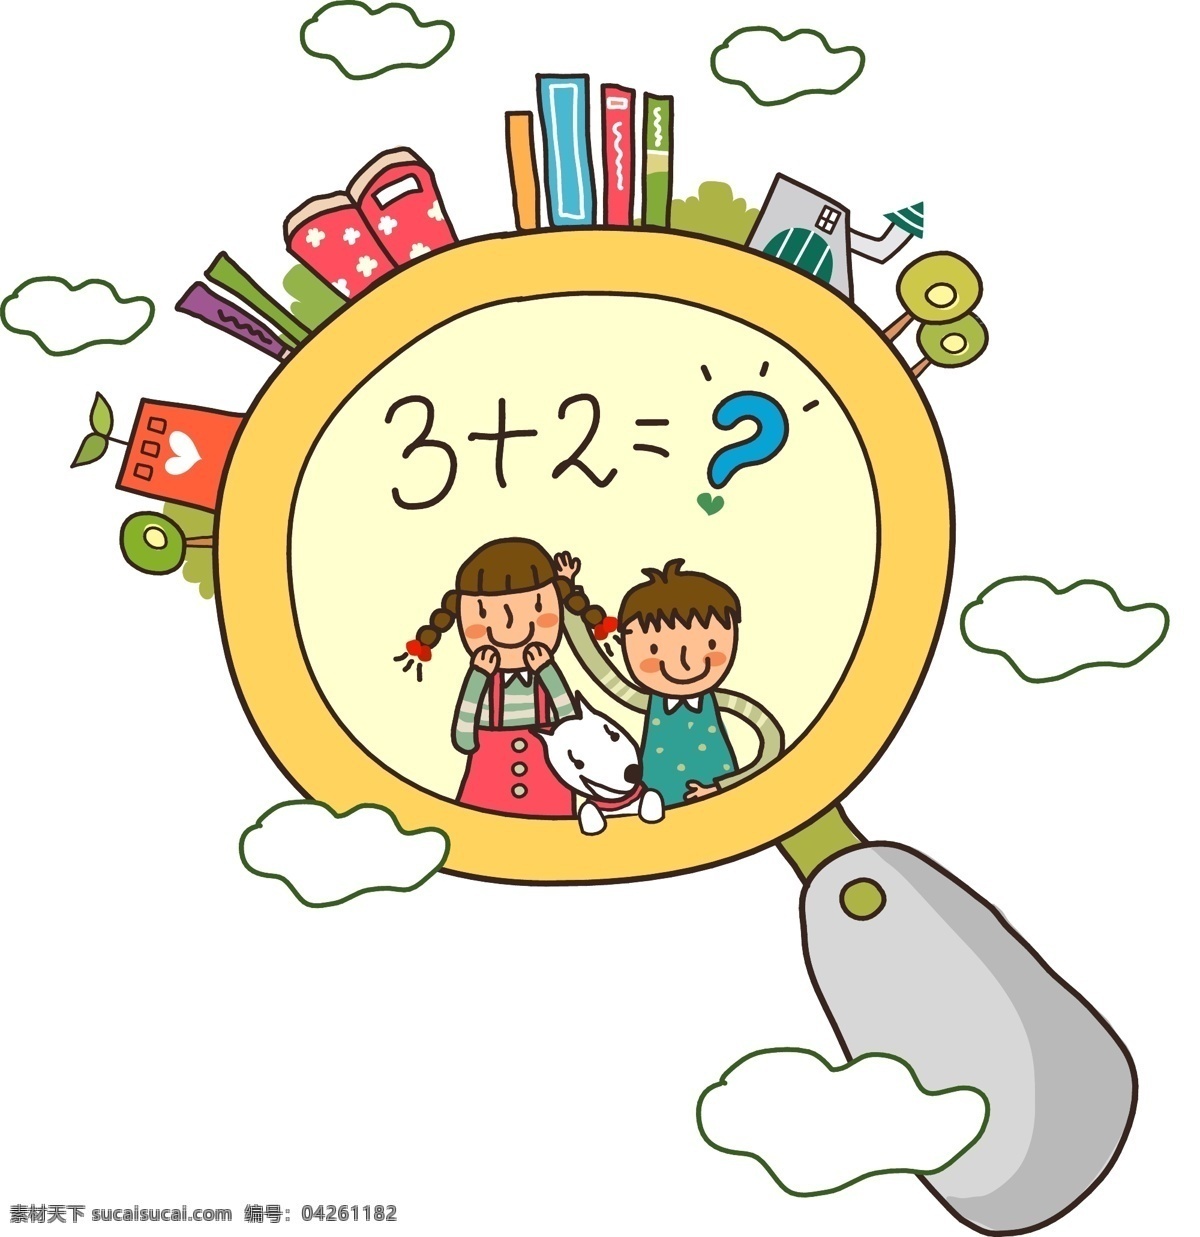 放大镜 里 可爱 孩子 少儿 学习 教育 算术题 插画 卡通 儿童 童趣 童年 游戏 玩耍 矢量图 白色